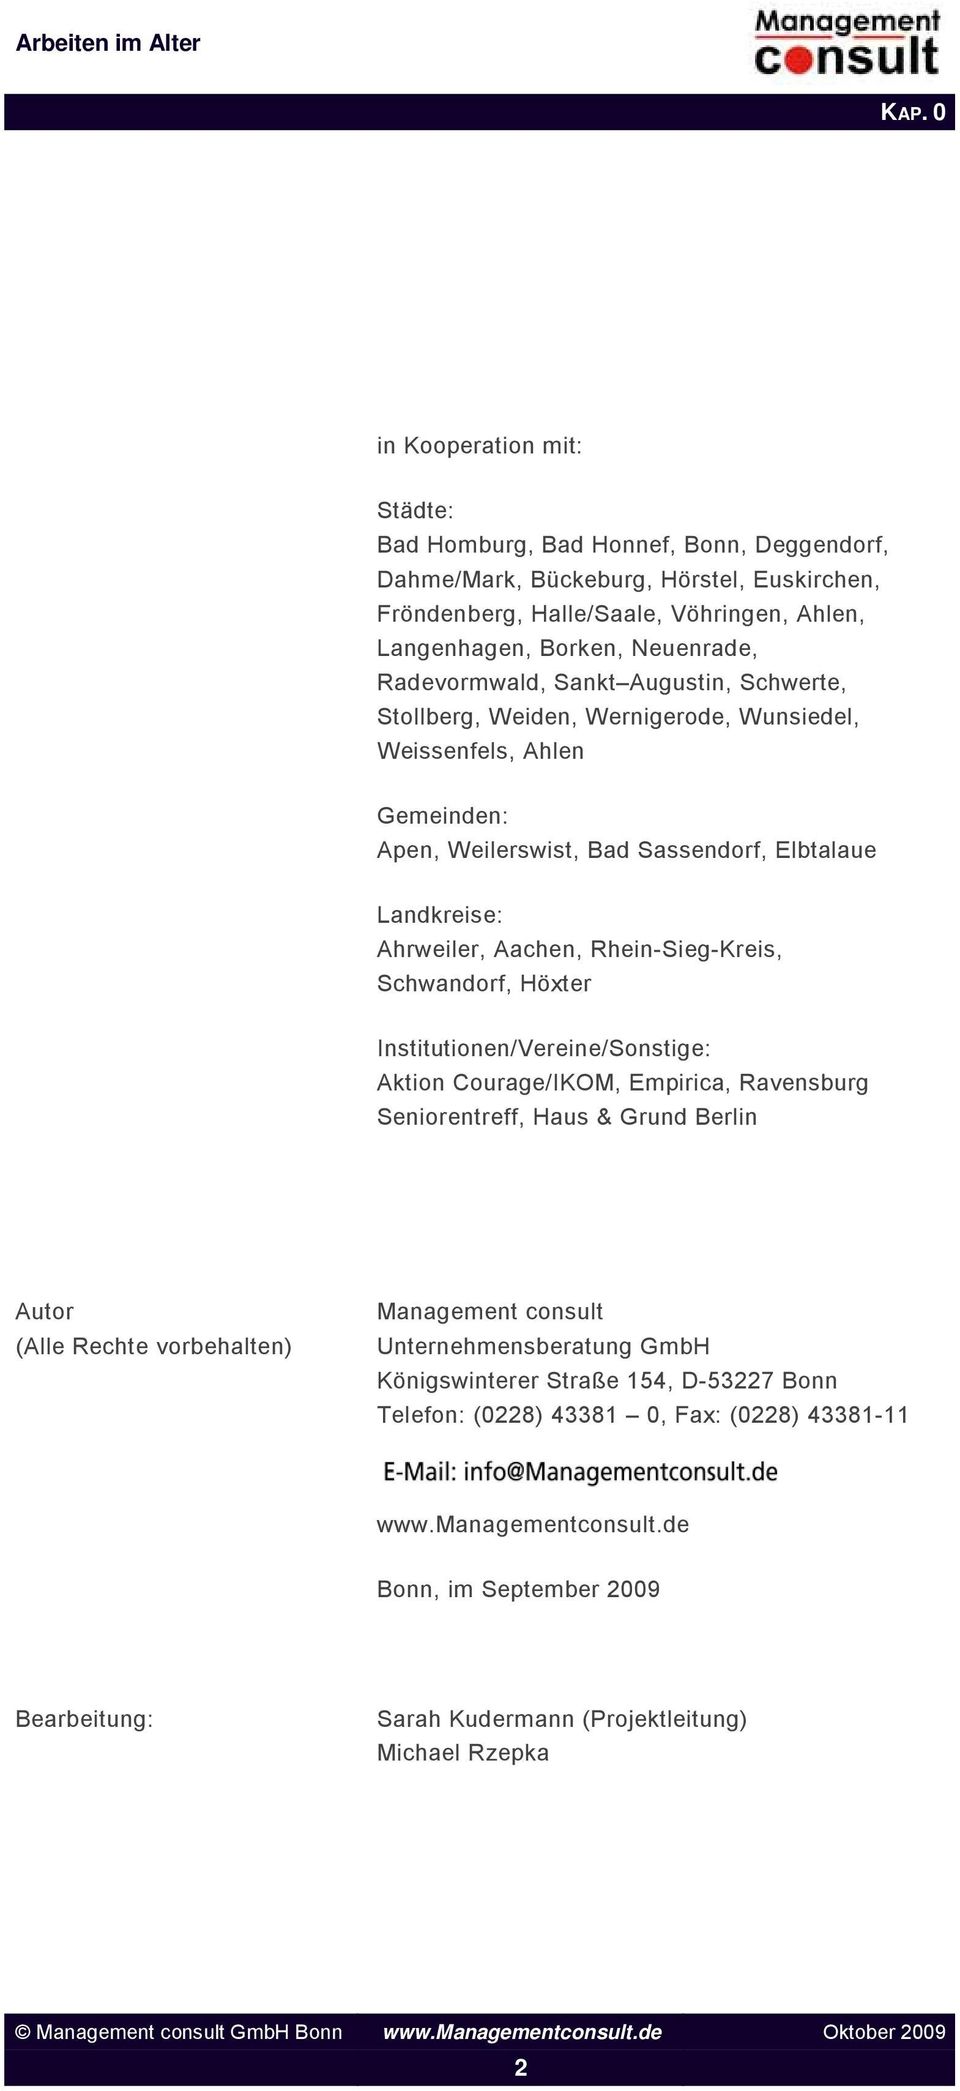 Rhein-Sieg-Kreis, Schwandorf, Höxter Institutionen/Vereine/Sonstige: Aktion Courage/IKOM, Empirica, Ravensburg Seniorentreff, Haus & Grund Berlin Autor (Alle Rechte vorbehalten) Management consult